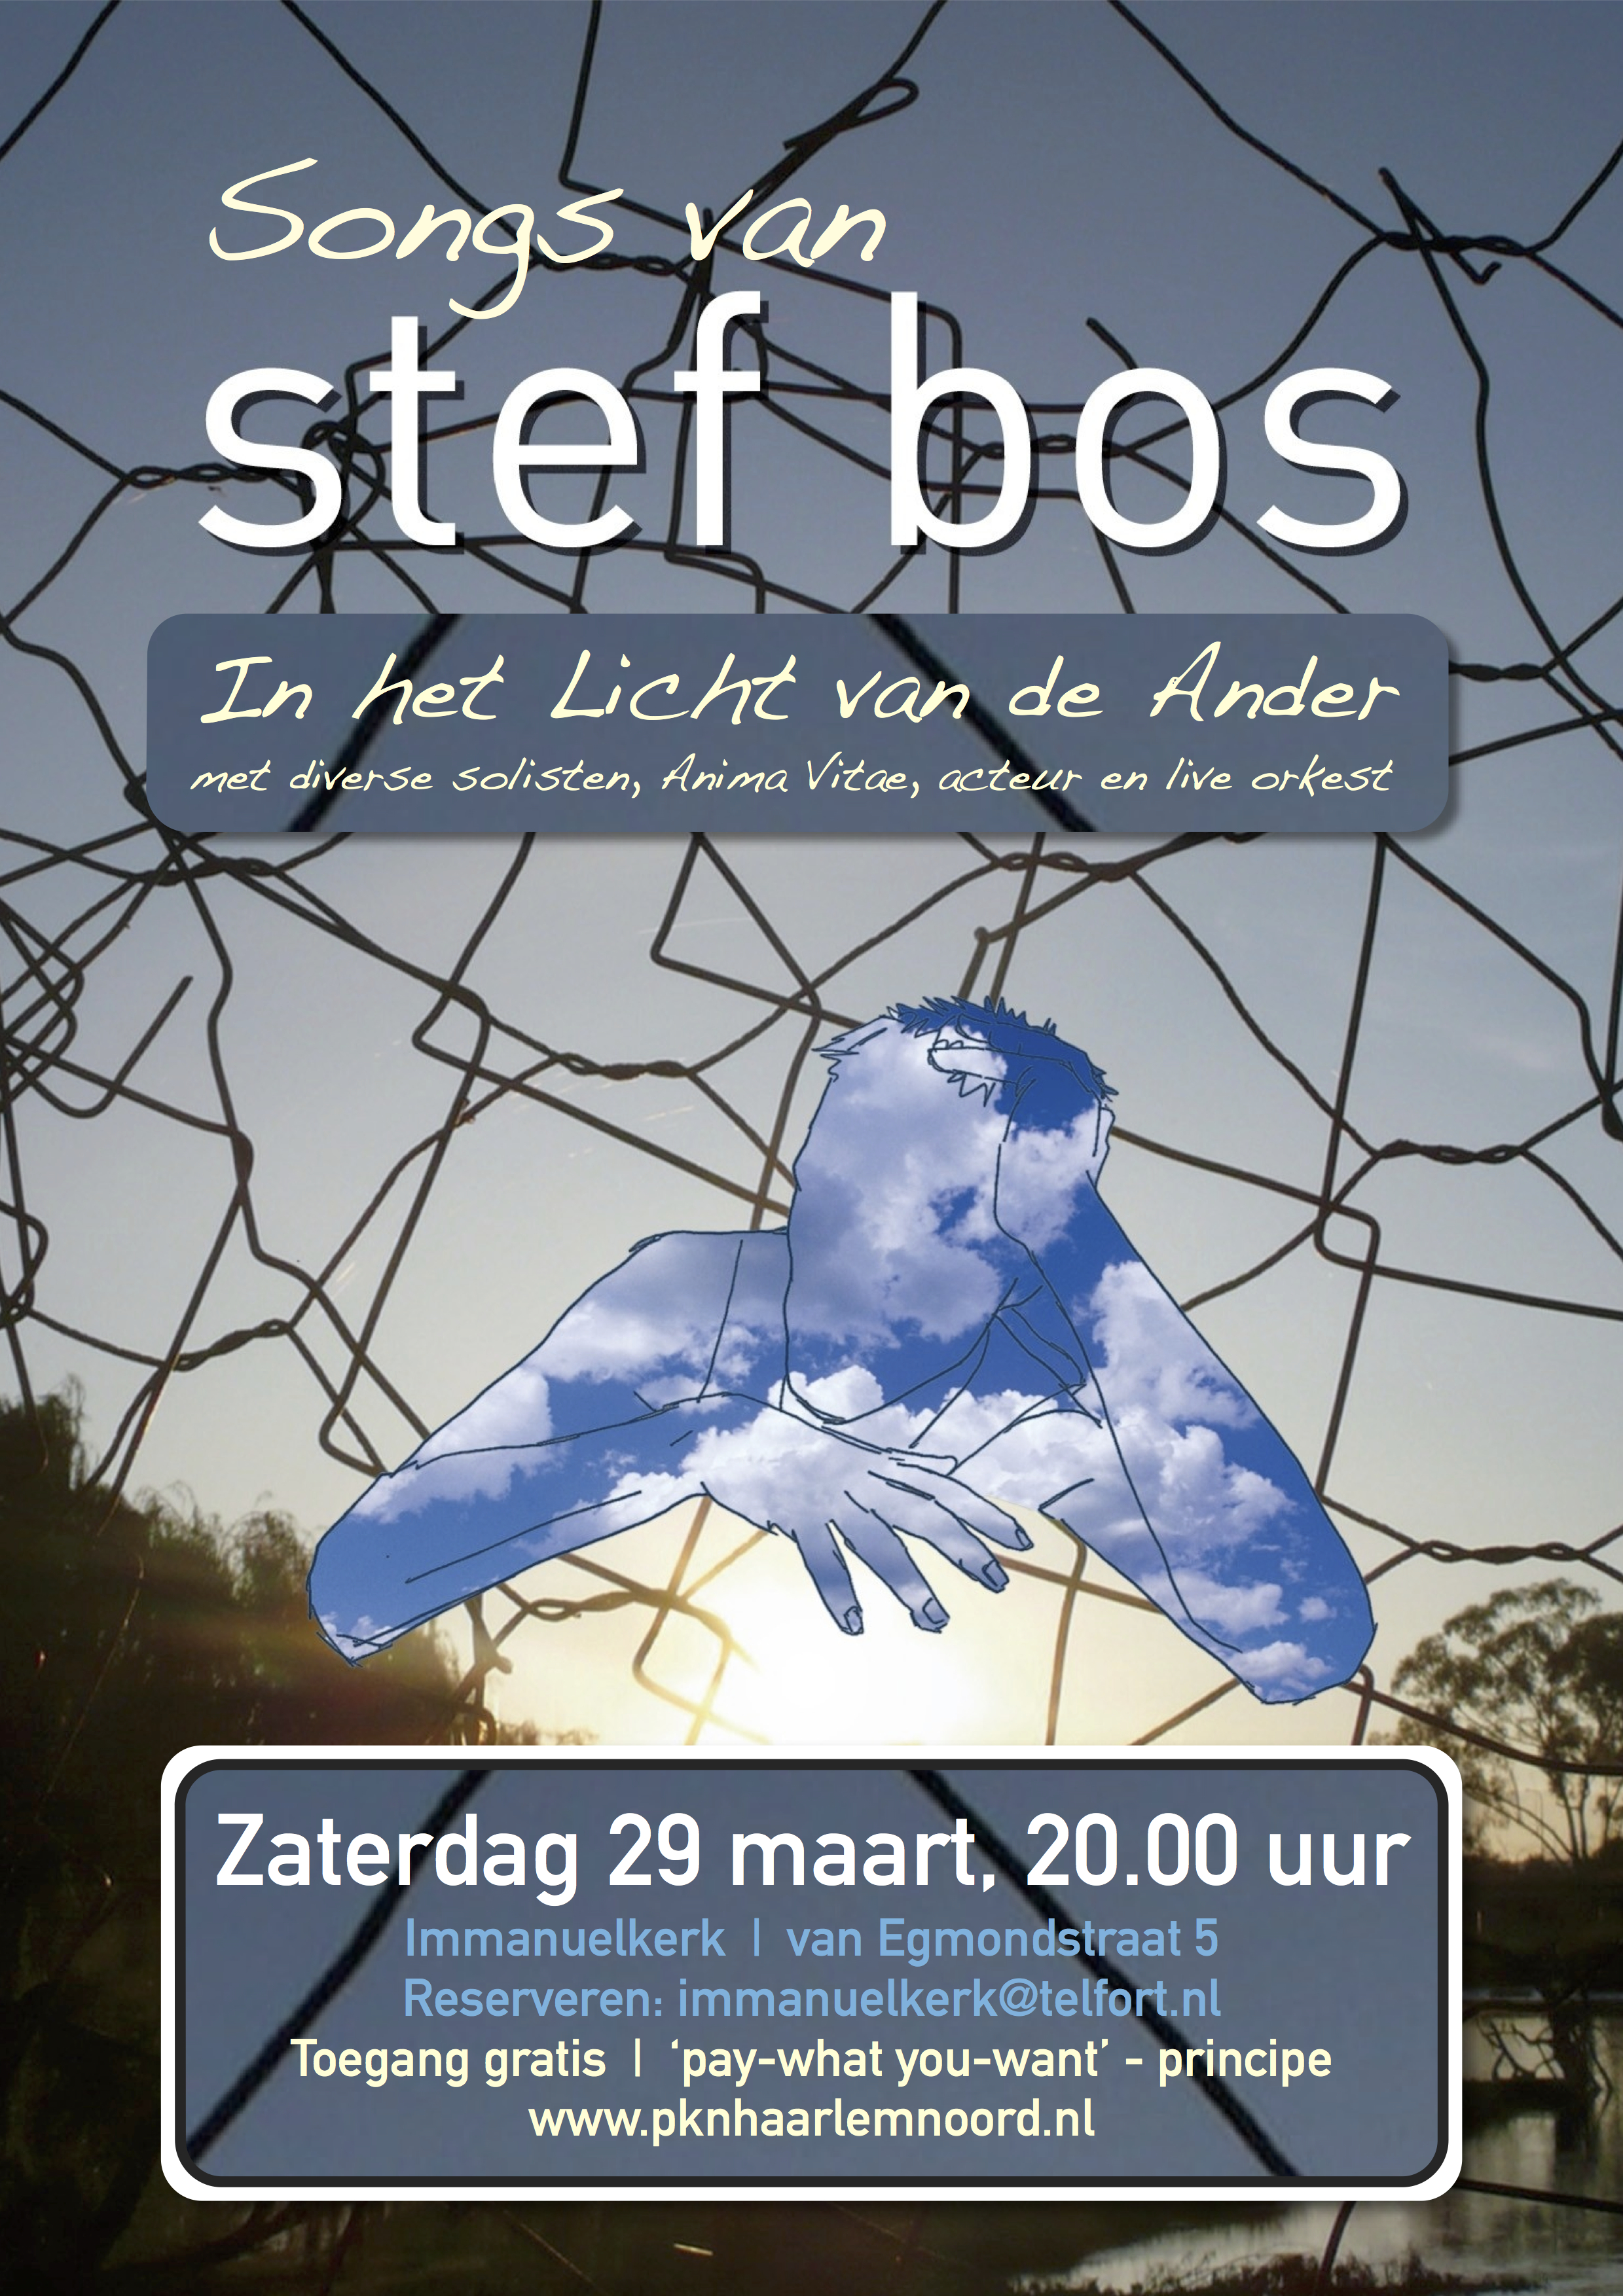 songs-van-stef-bos-poster